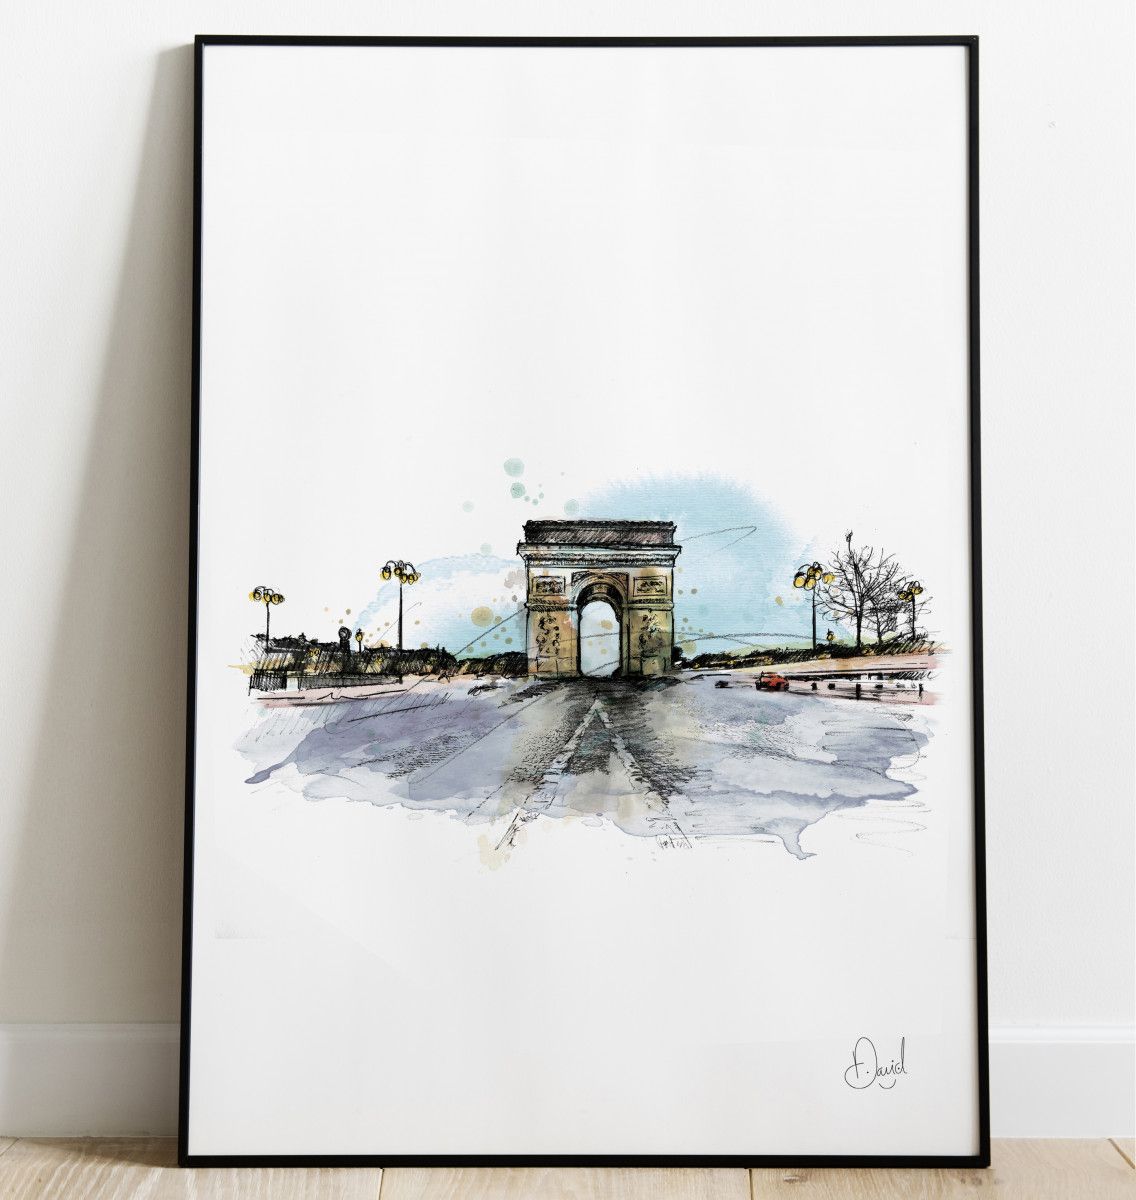 Paris - Arc de Triomphe - Triomphe is ours art print